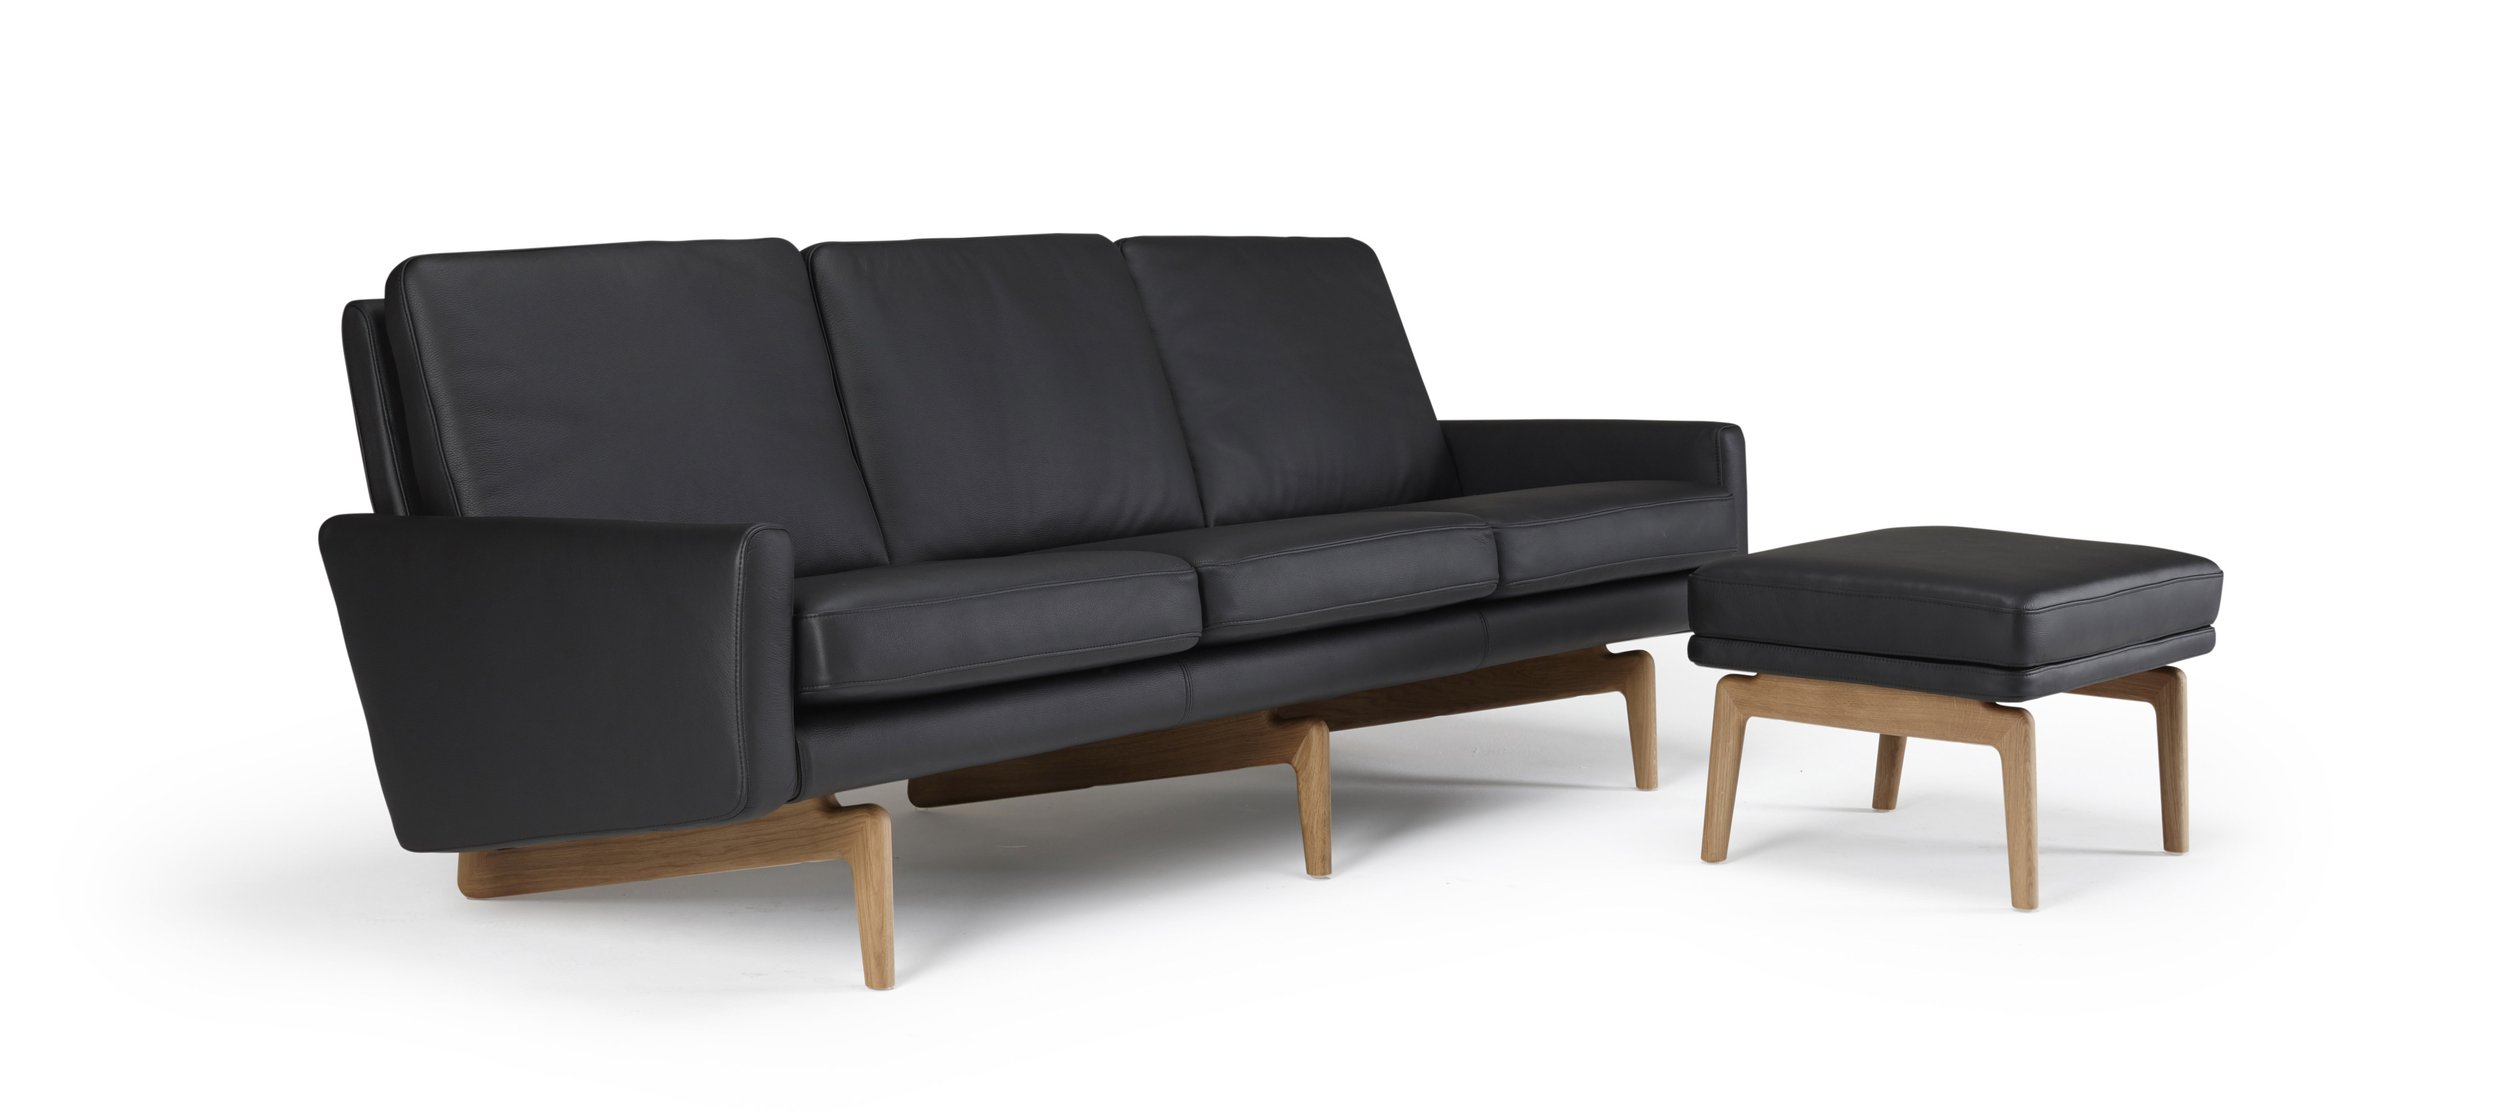 K200-sofa-3-seater-arms-800-black-p6.jpg